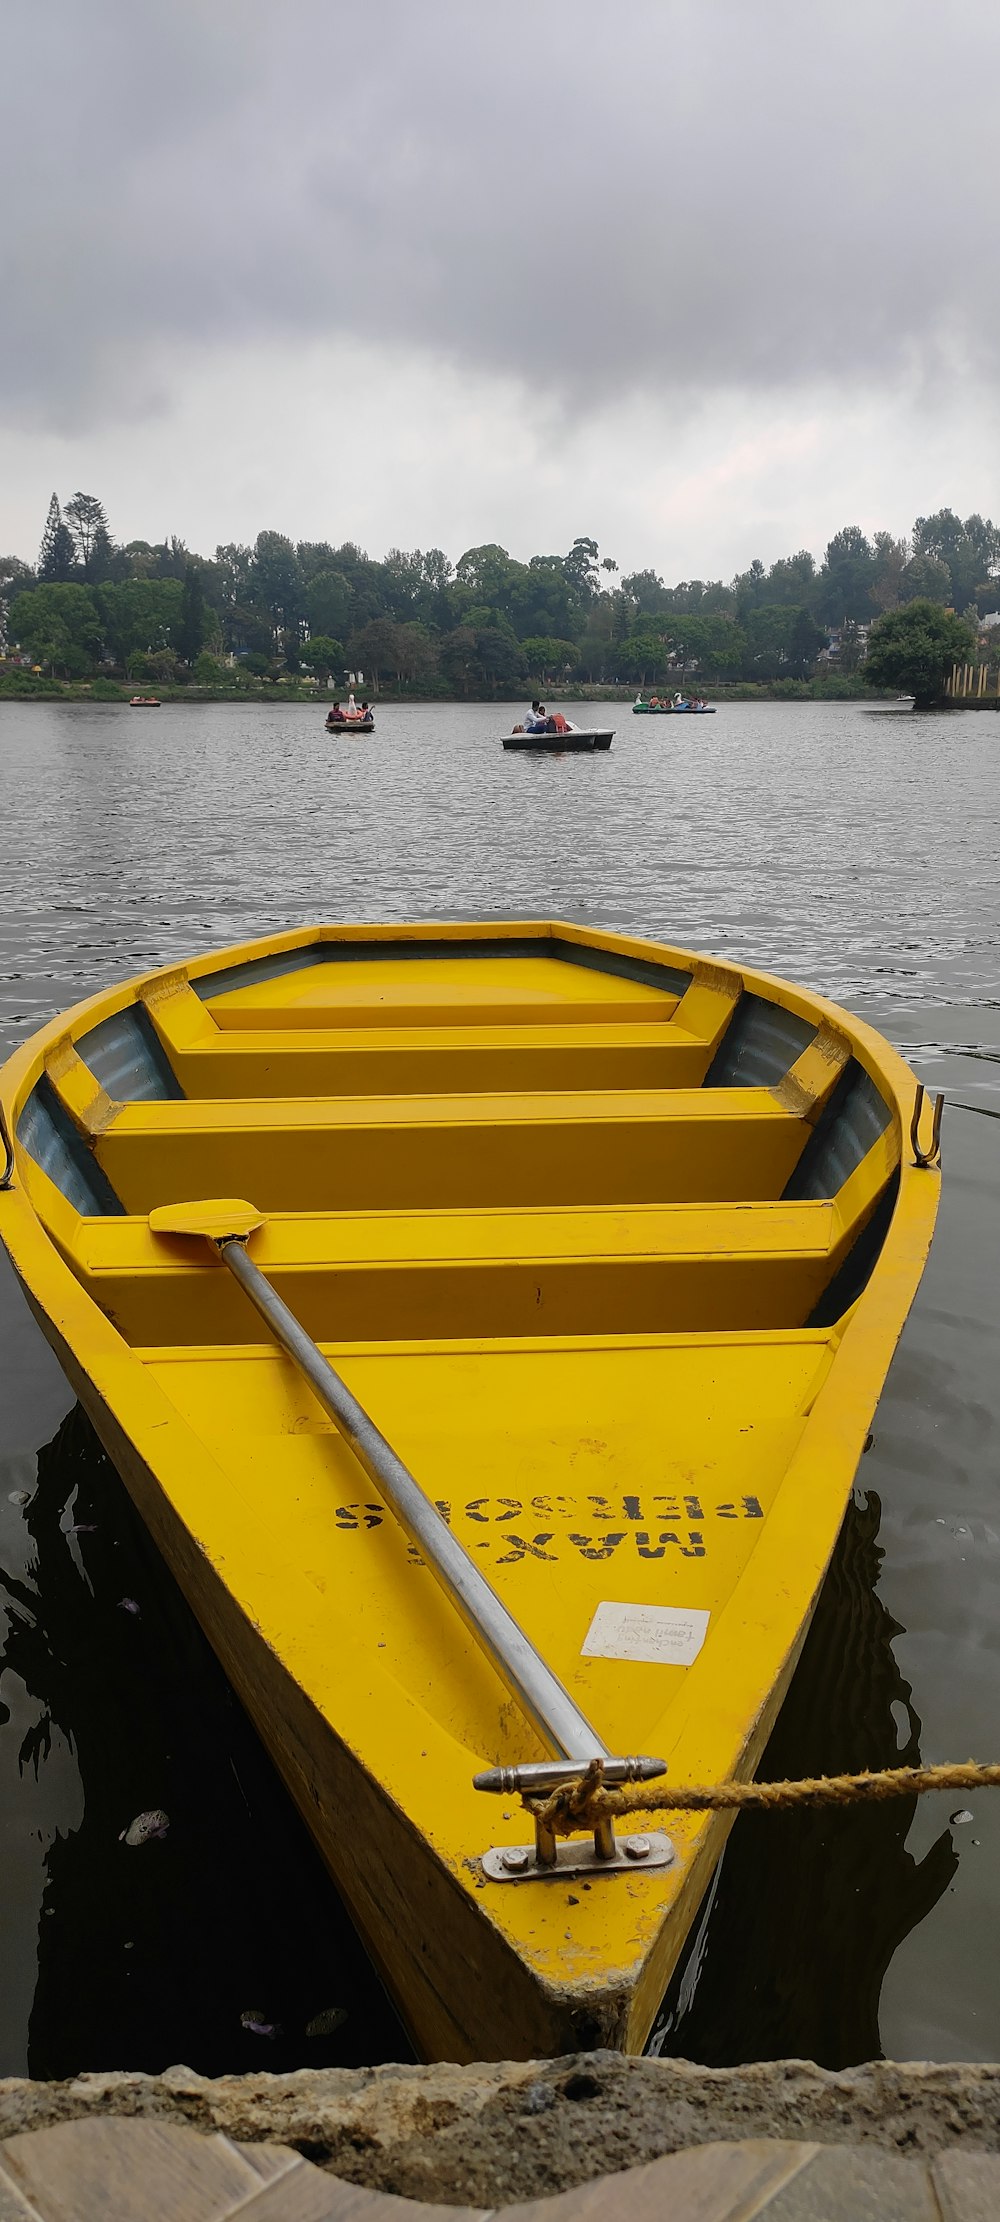 Ein kleines gelbes Boot, das auf einem See schwimmt